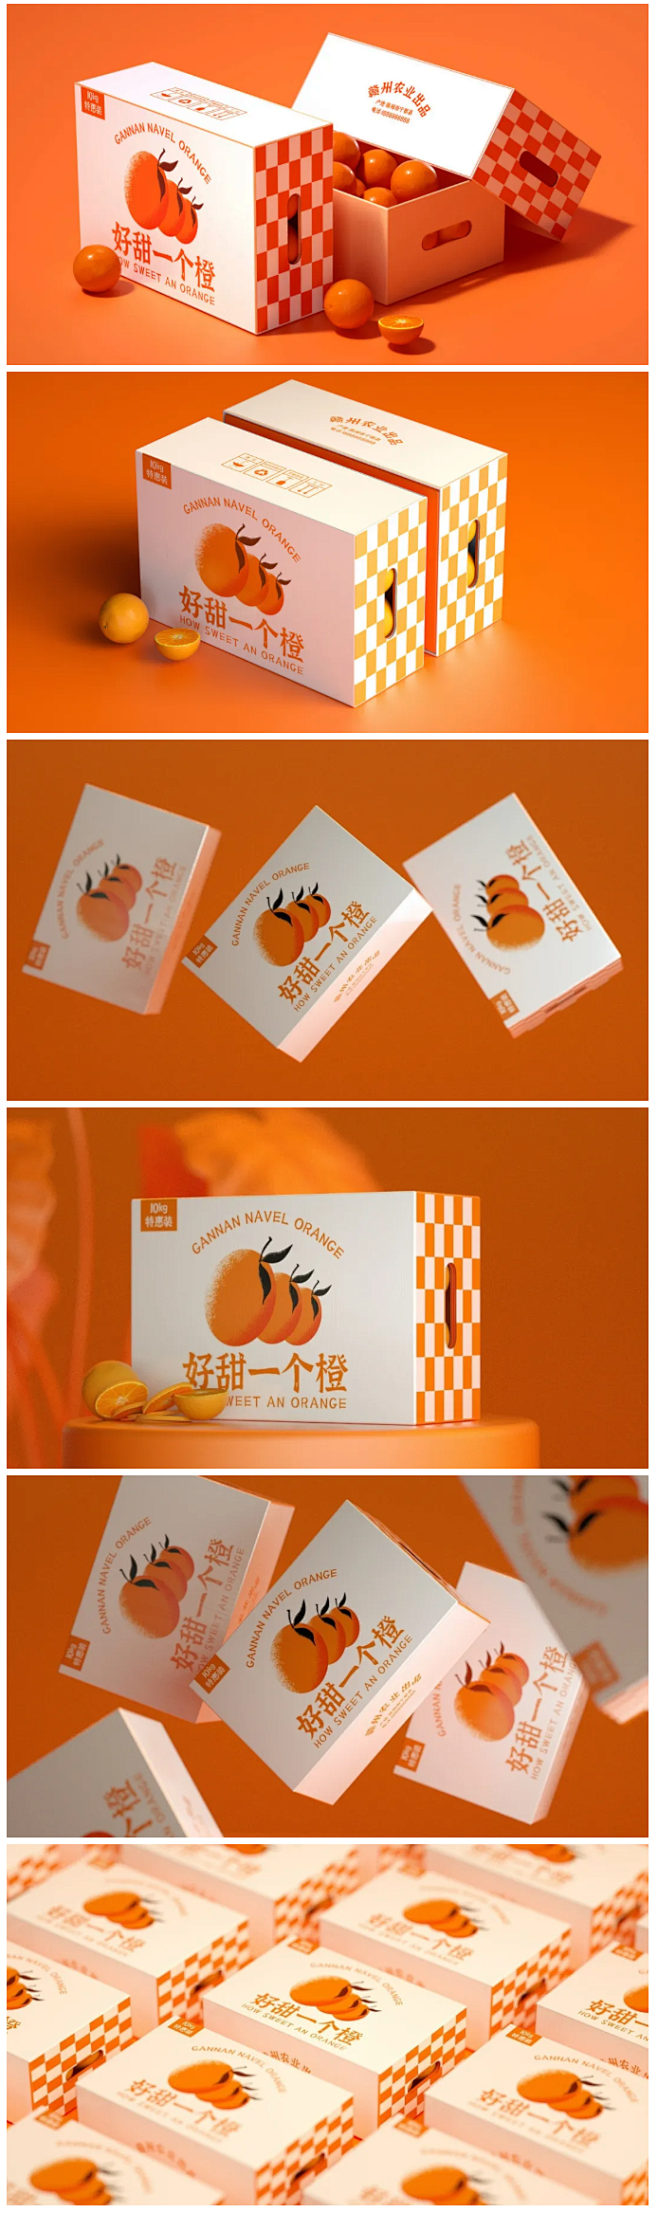 诱人的水果礼盒包装设计
——
好甜一个橙...